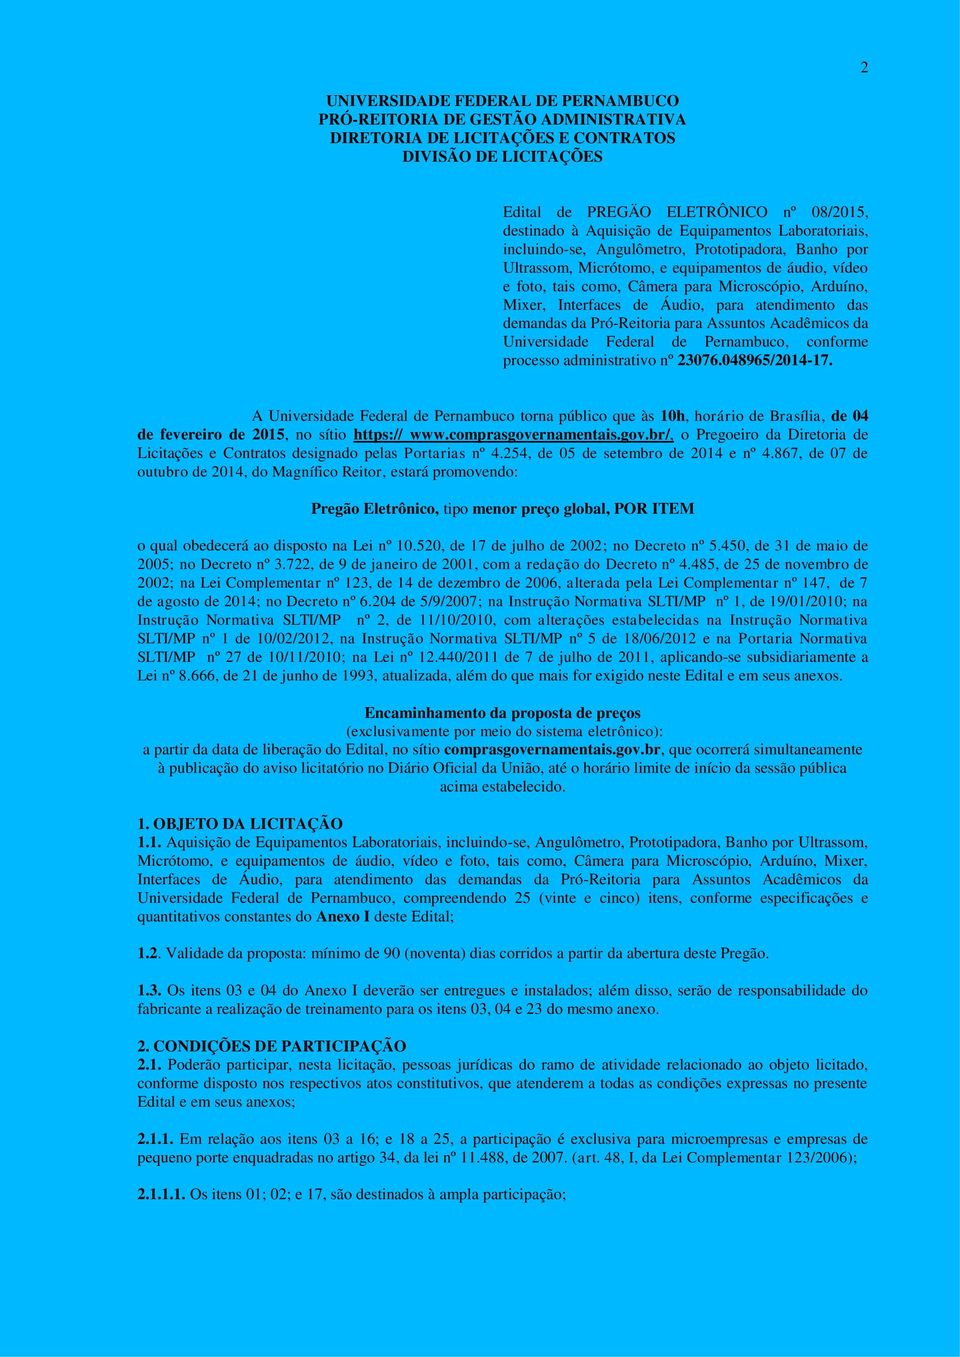 Interfaces de Áudio, para atendimento das demandas da Pró-Reitoria para Assuntos Acadêmicos da Universidade Federal de Pernambuco, conforme processo administrativo nº 23076.048965/2014-17.